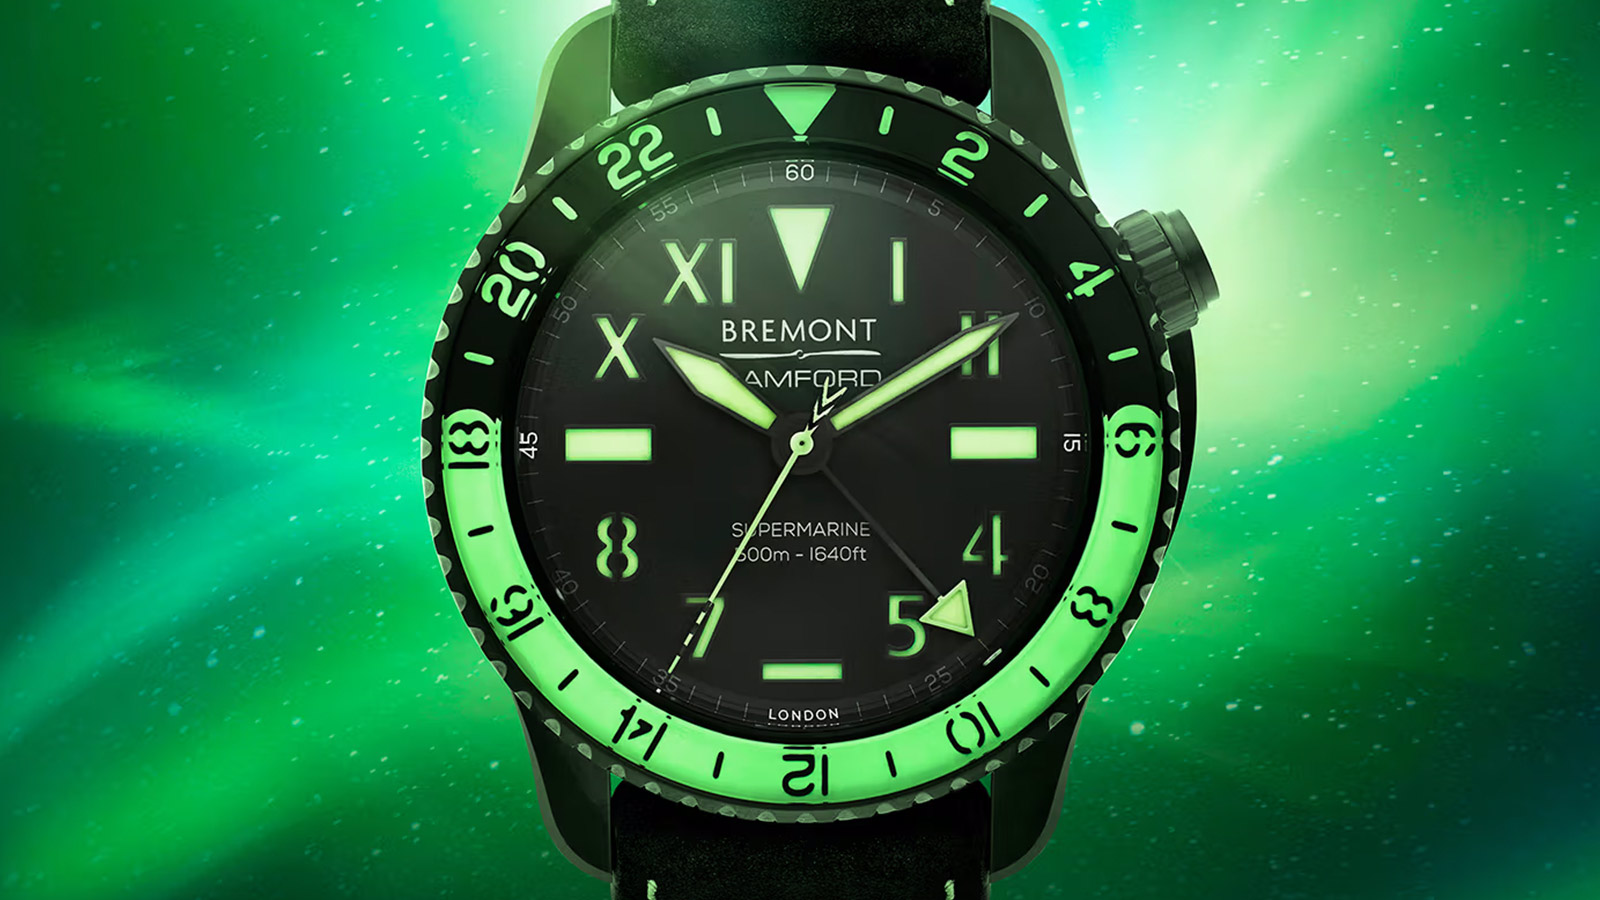 Bremont x Bamford "Aurora" Watch